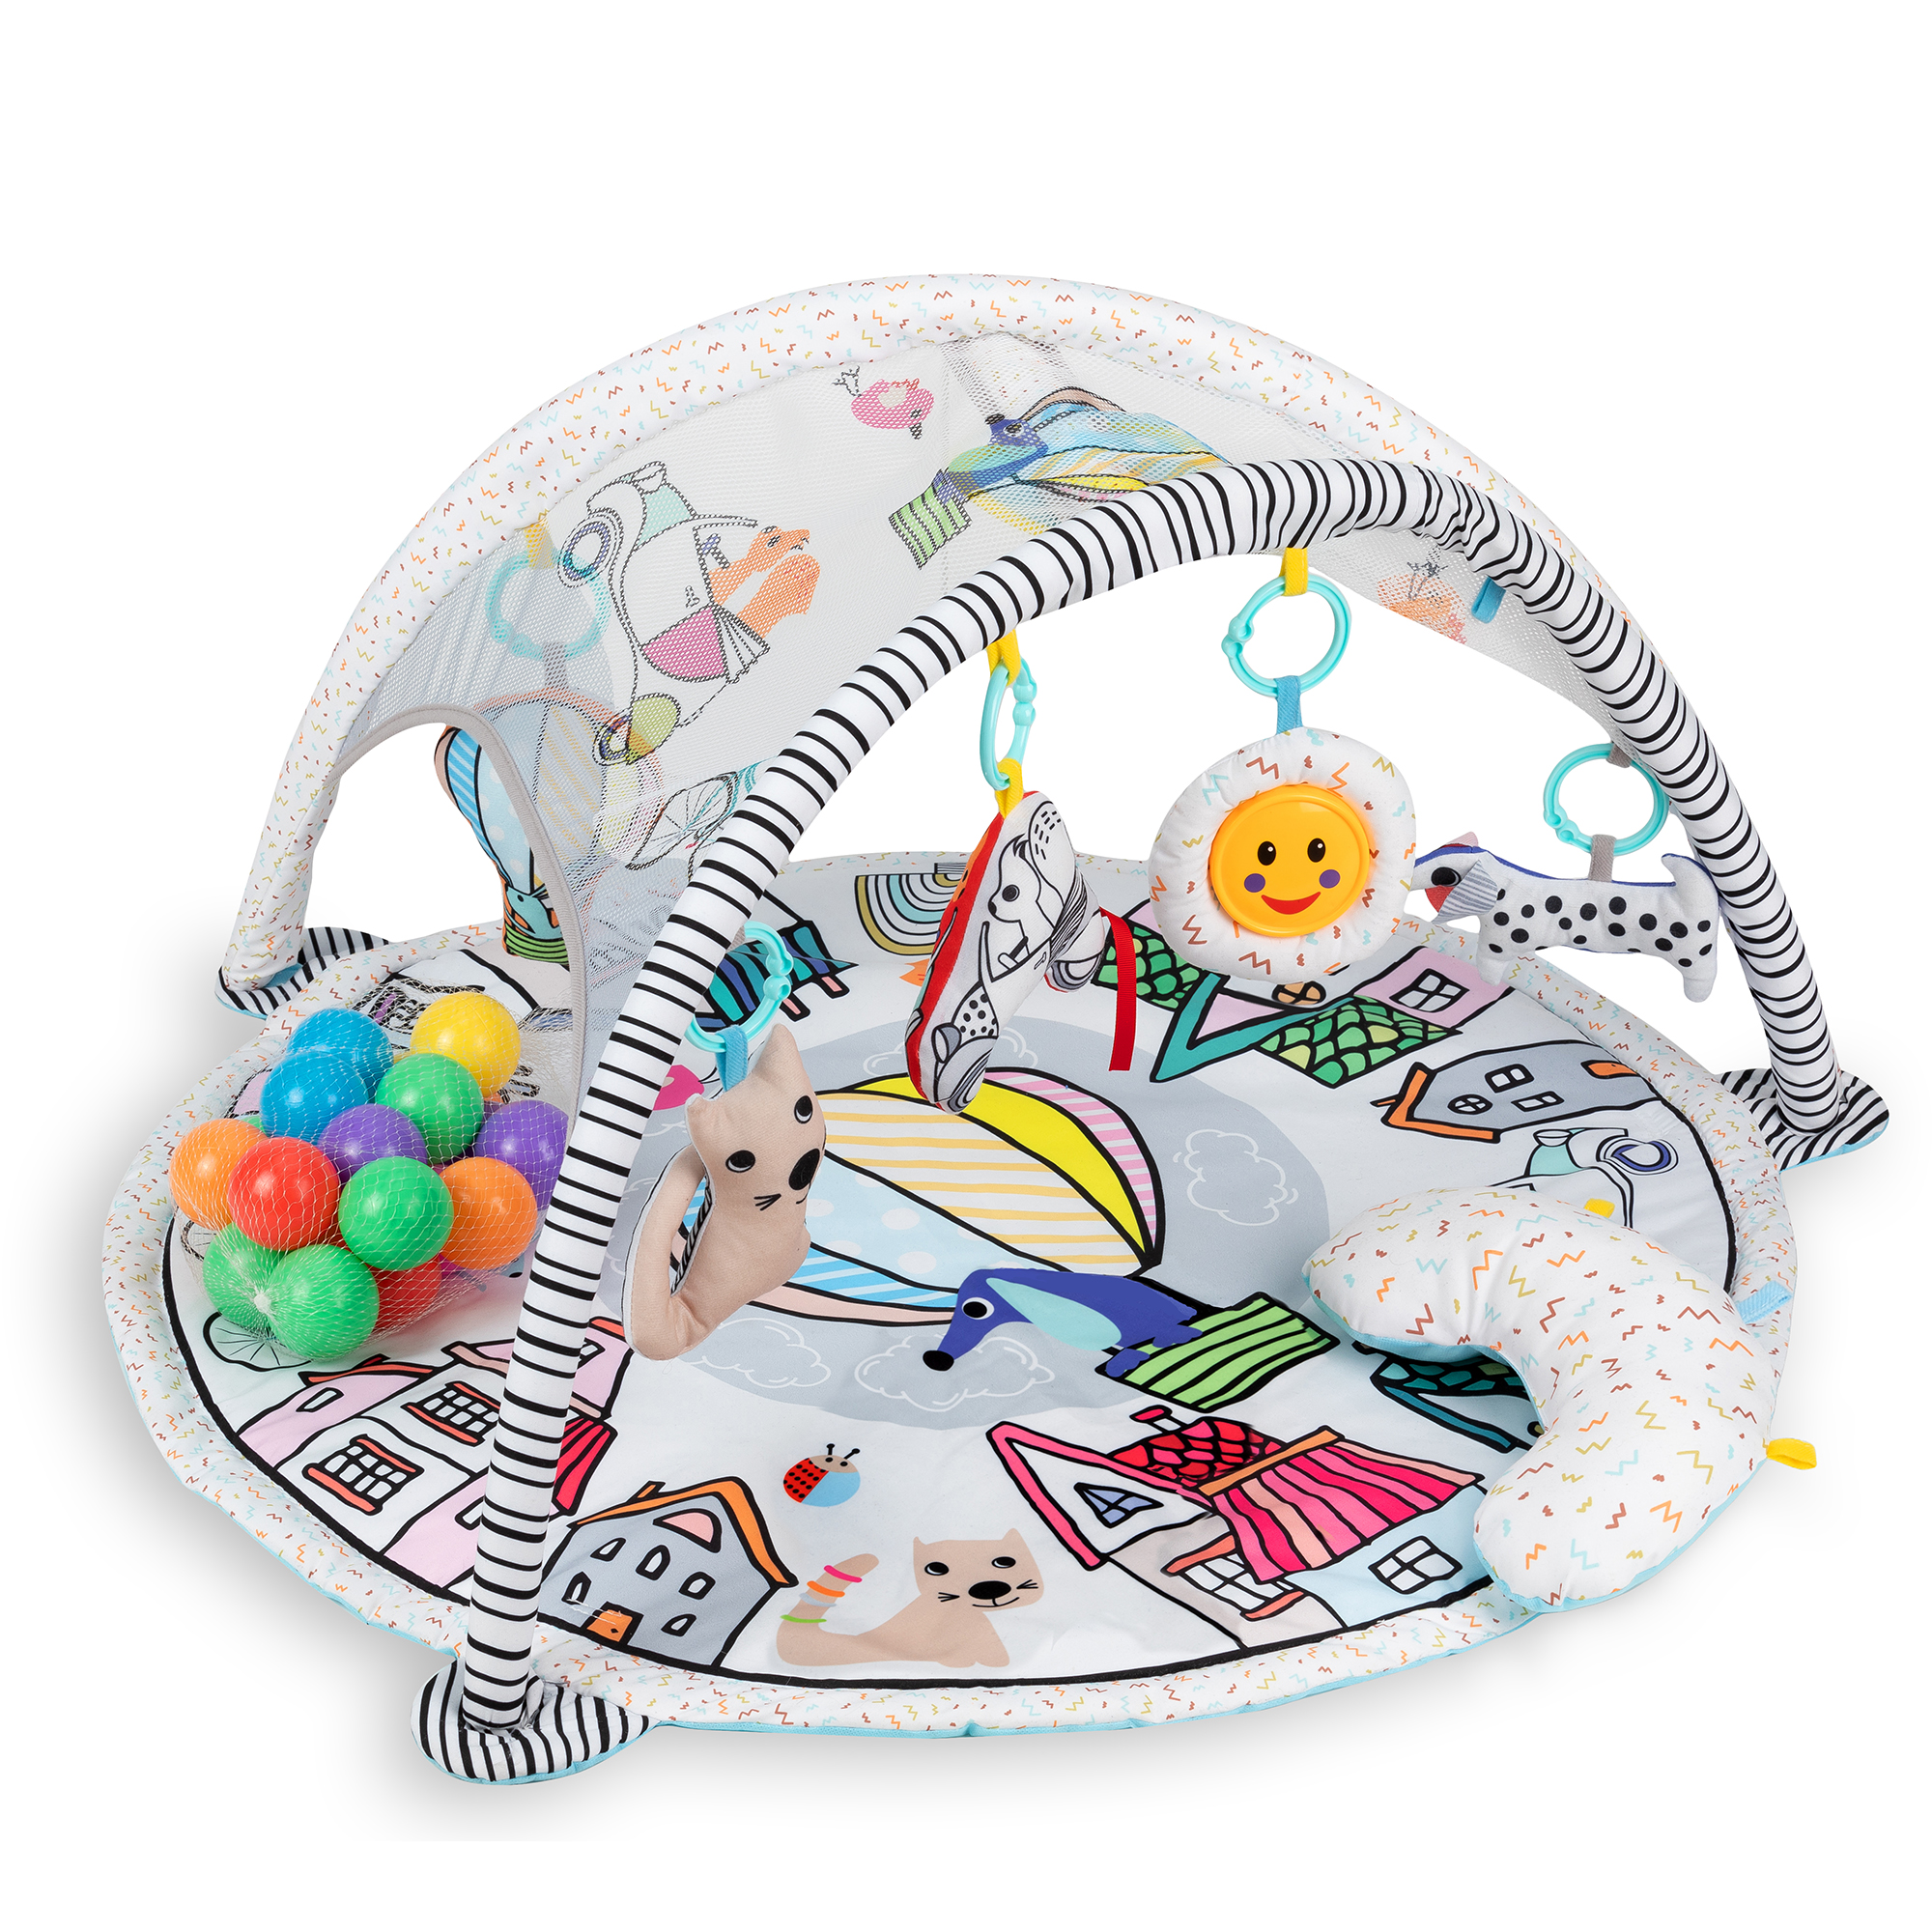 Wycinanki Scissor Skills Activity Pad - Kreatywna zabawa dla dzieci od 4  lat